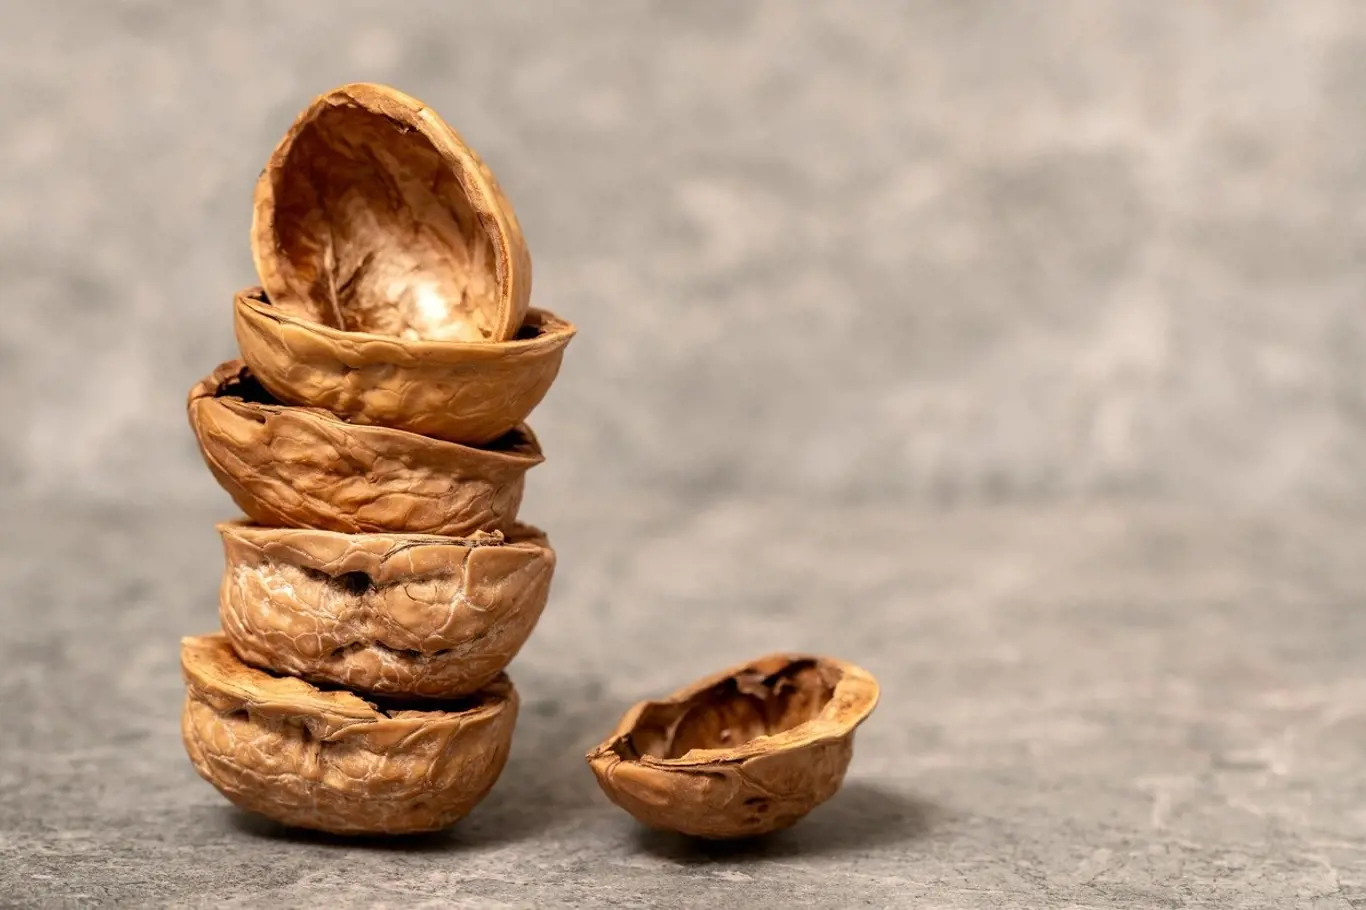 Co se dá udělat se skořápkami ořechů?